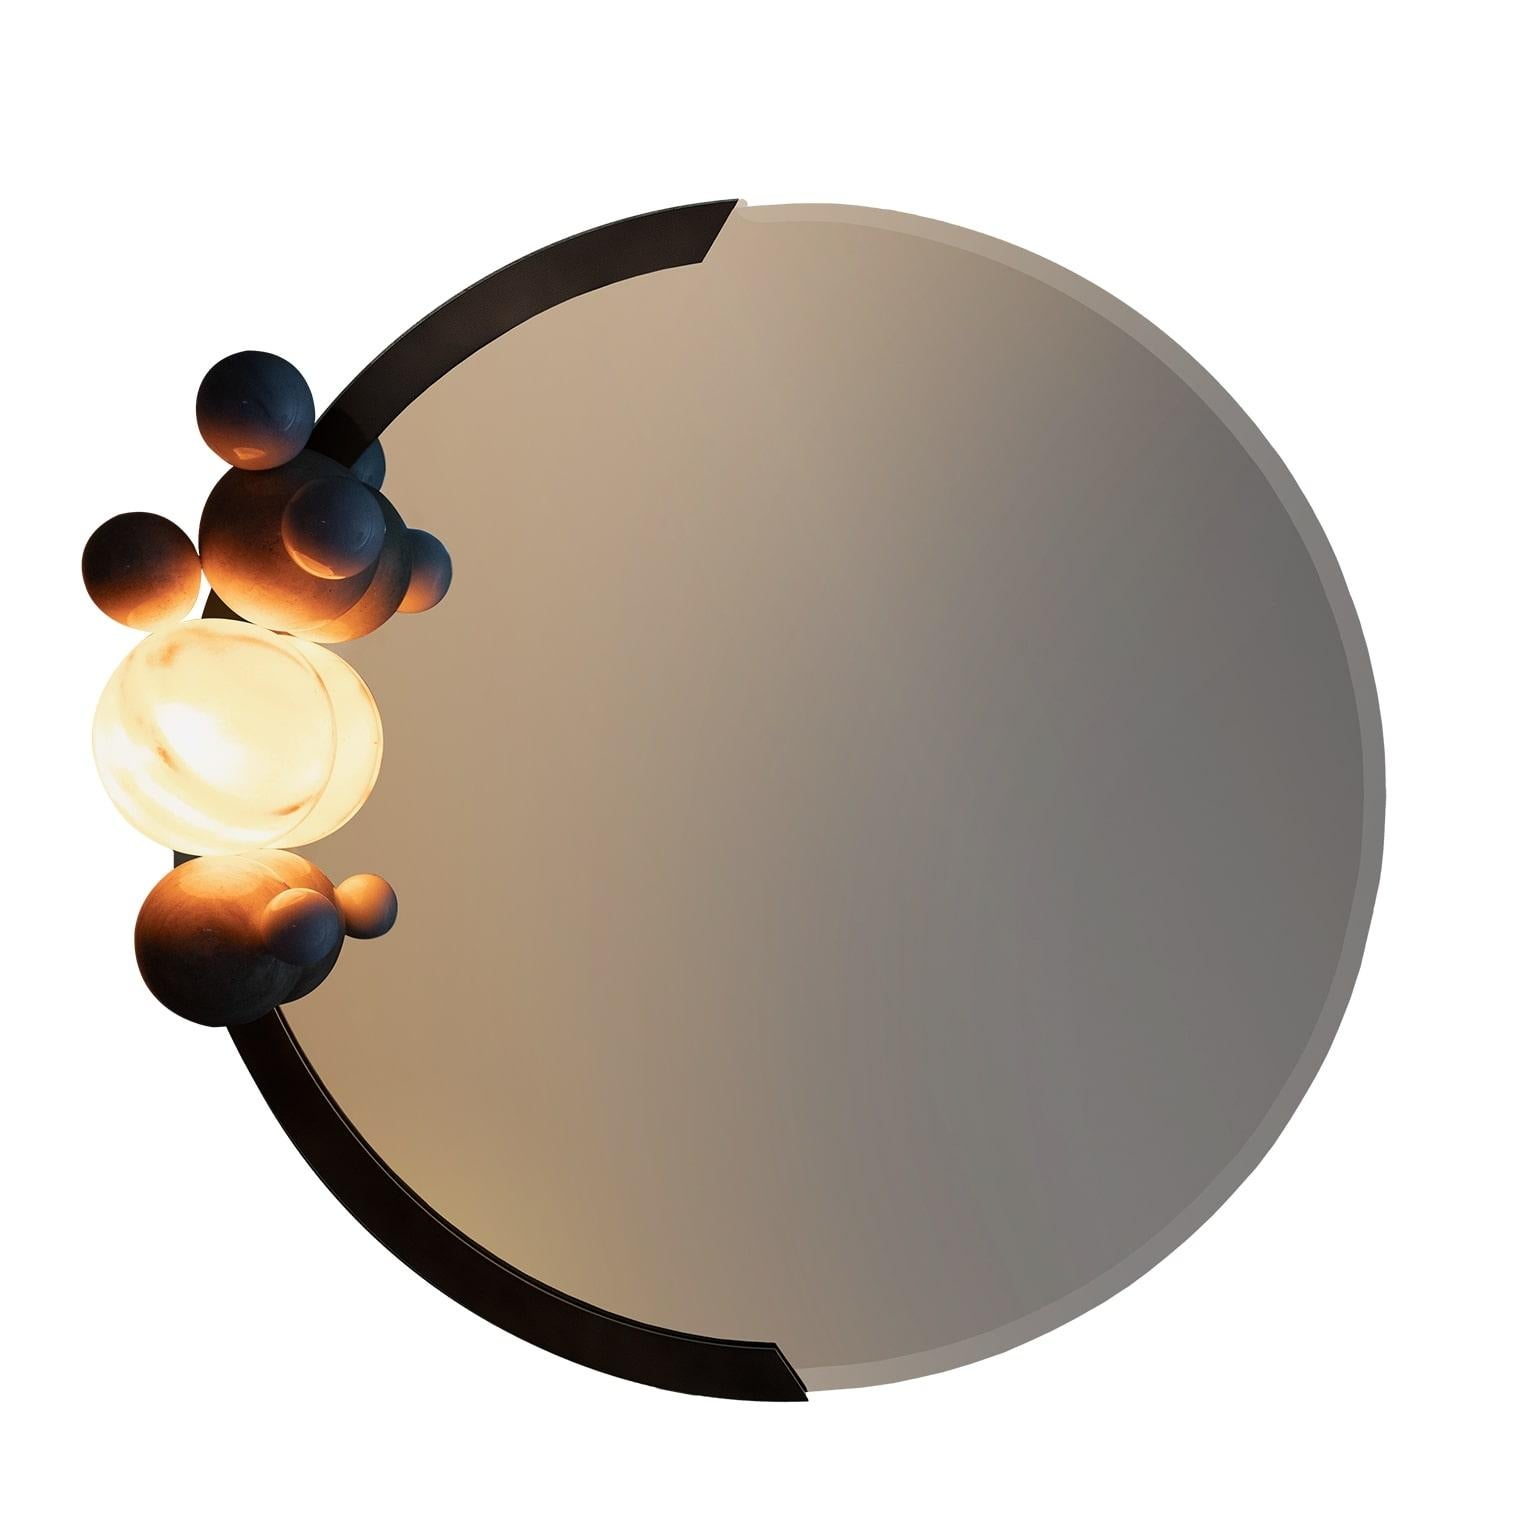 Titan Mirror ist ein modernes Spiegeldesign für ein modernes Wanddekorationsstück. Titan, der größte Mond des Saturn, wurde vom Sonnensystem inspiriert. Spontan und raffiniert stellt dieser Wandspiegel eine multifunktionale Designvision dar.